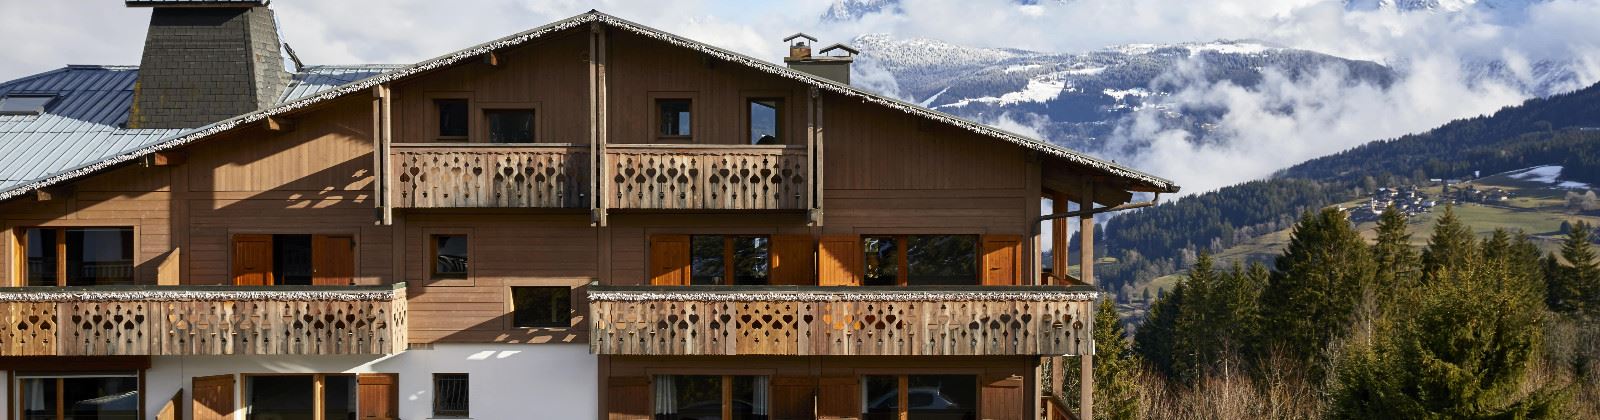 OLEVENE image - chalet-alpen-valley-olevene-congres-